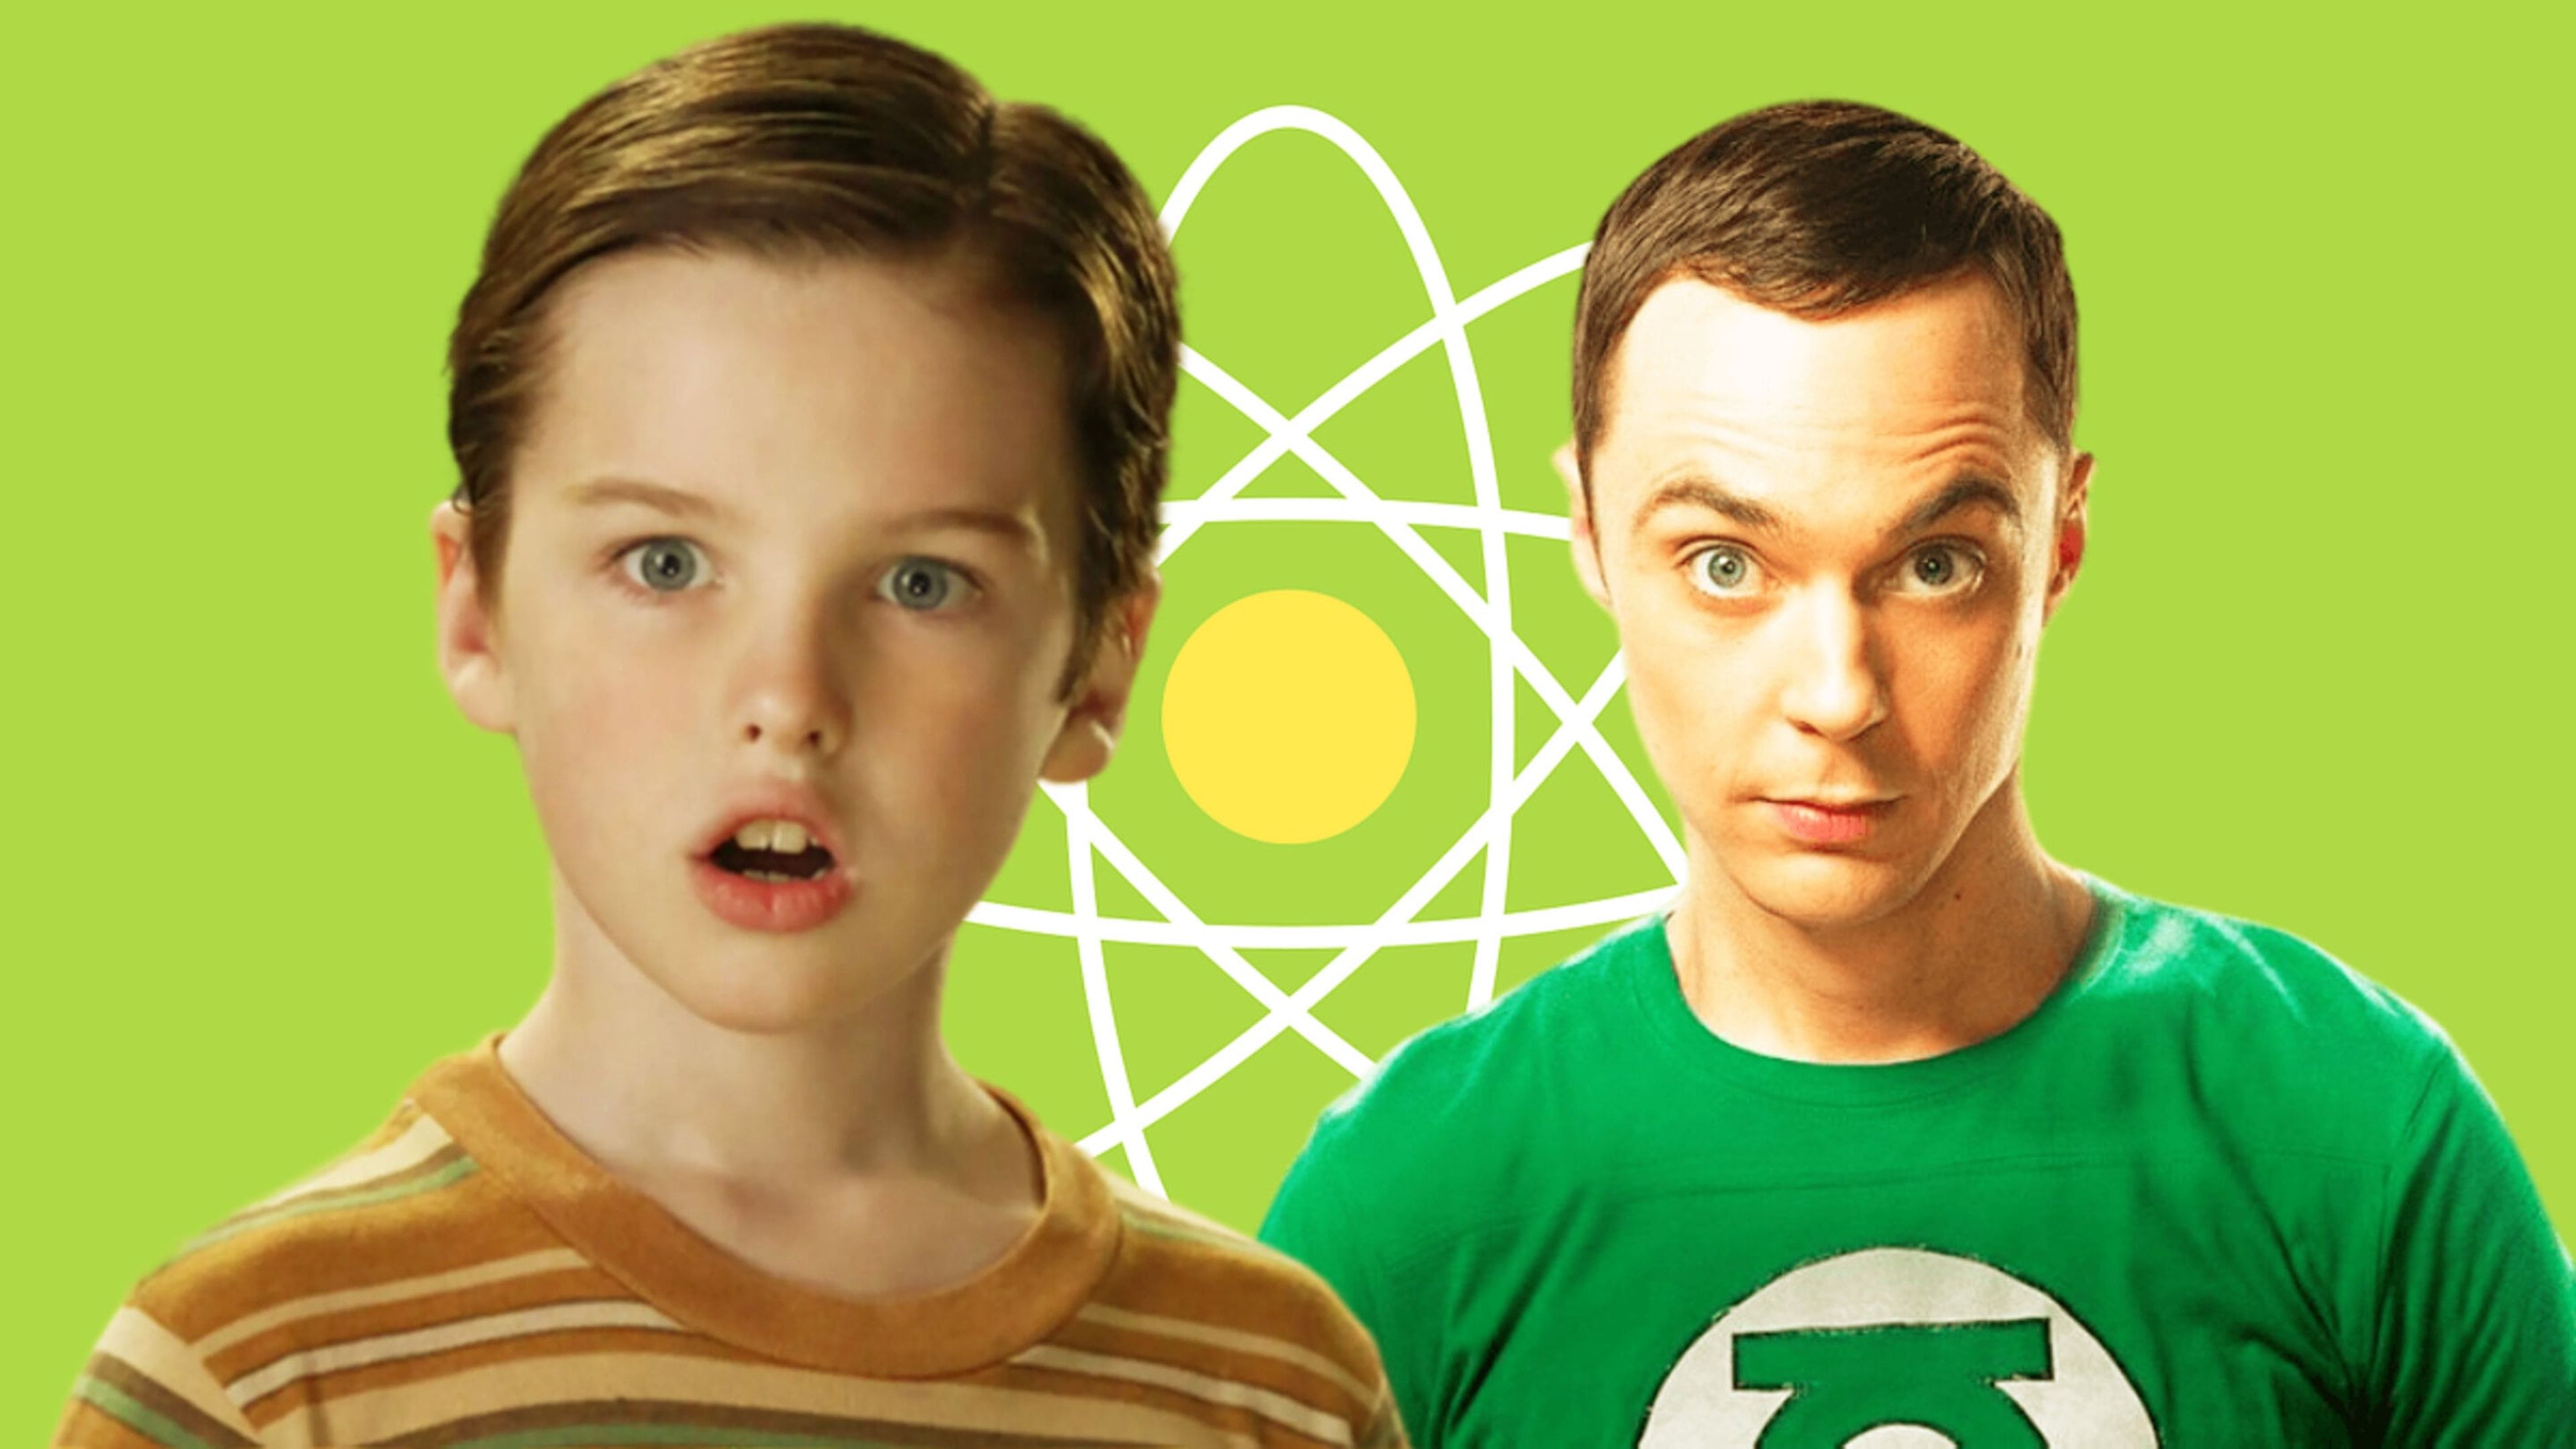 Jim Parsons pierde algo de la esencia The Big Bang Theory en el final de El joven Sheldon. ¿Es un acierto o metedura de pata?